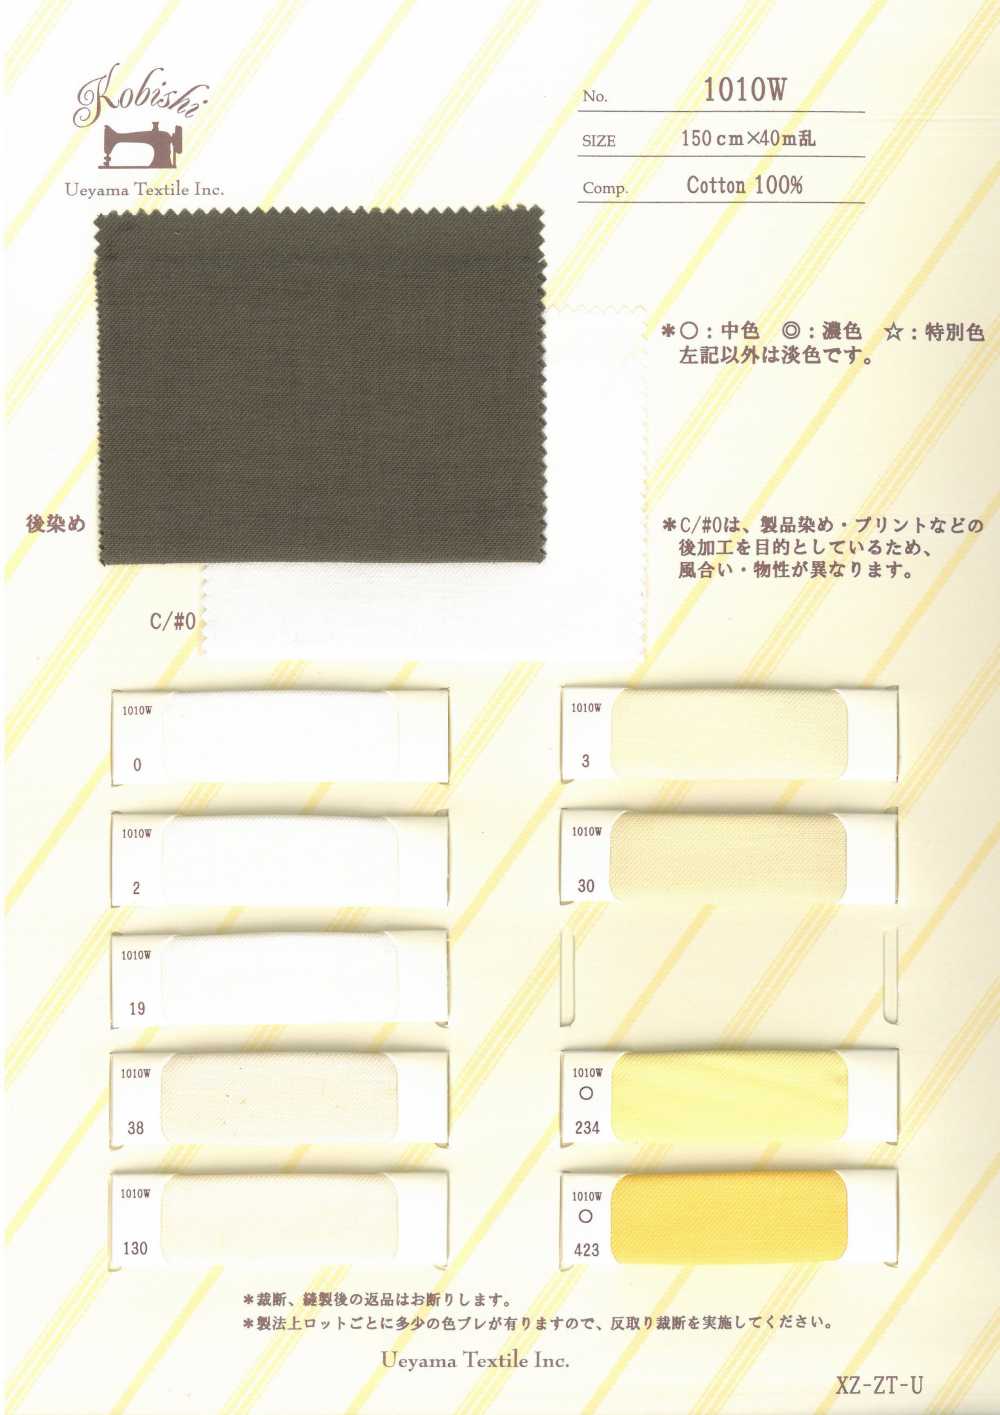 1010W Nr. 4 Taschenfutter Mit Breiter Breite Ueyama Textile